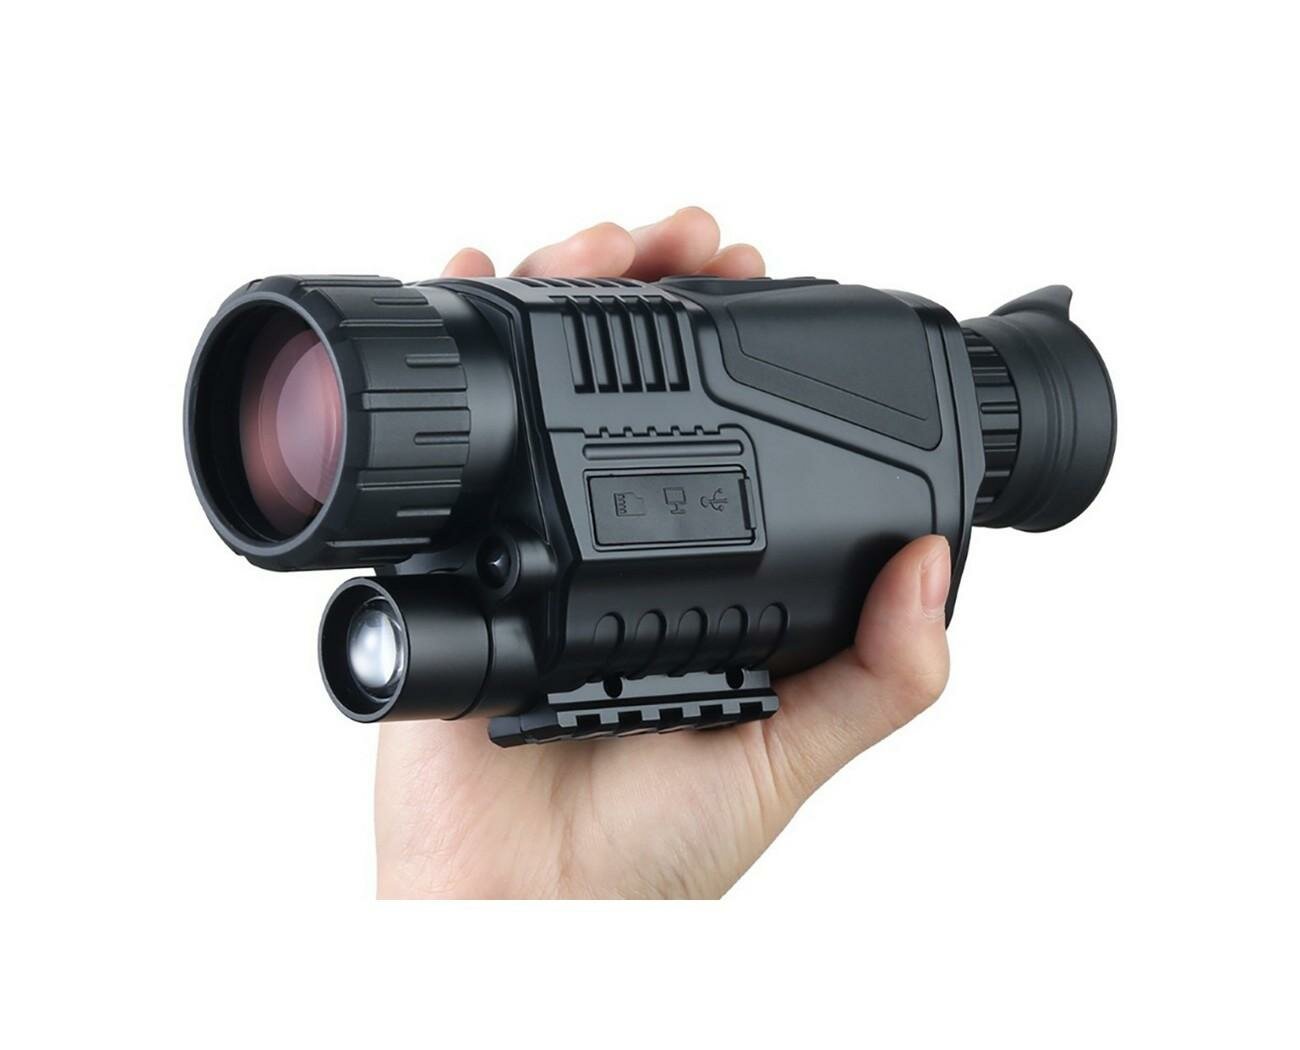 Прицел монокуляр ночного видения с дальномером NV 300 (5х zoom) (W17266CI) ночное видение для охоты и охотников. Видимость в темноте до 200 м!